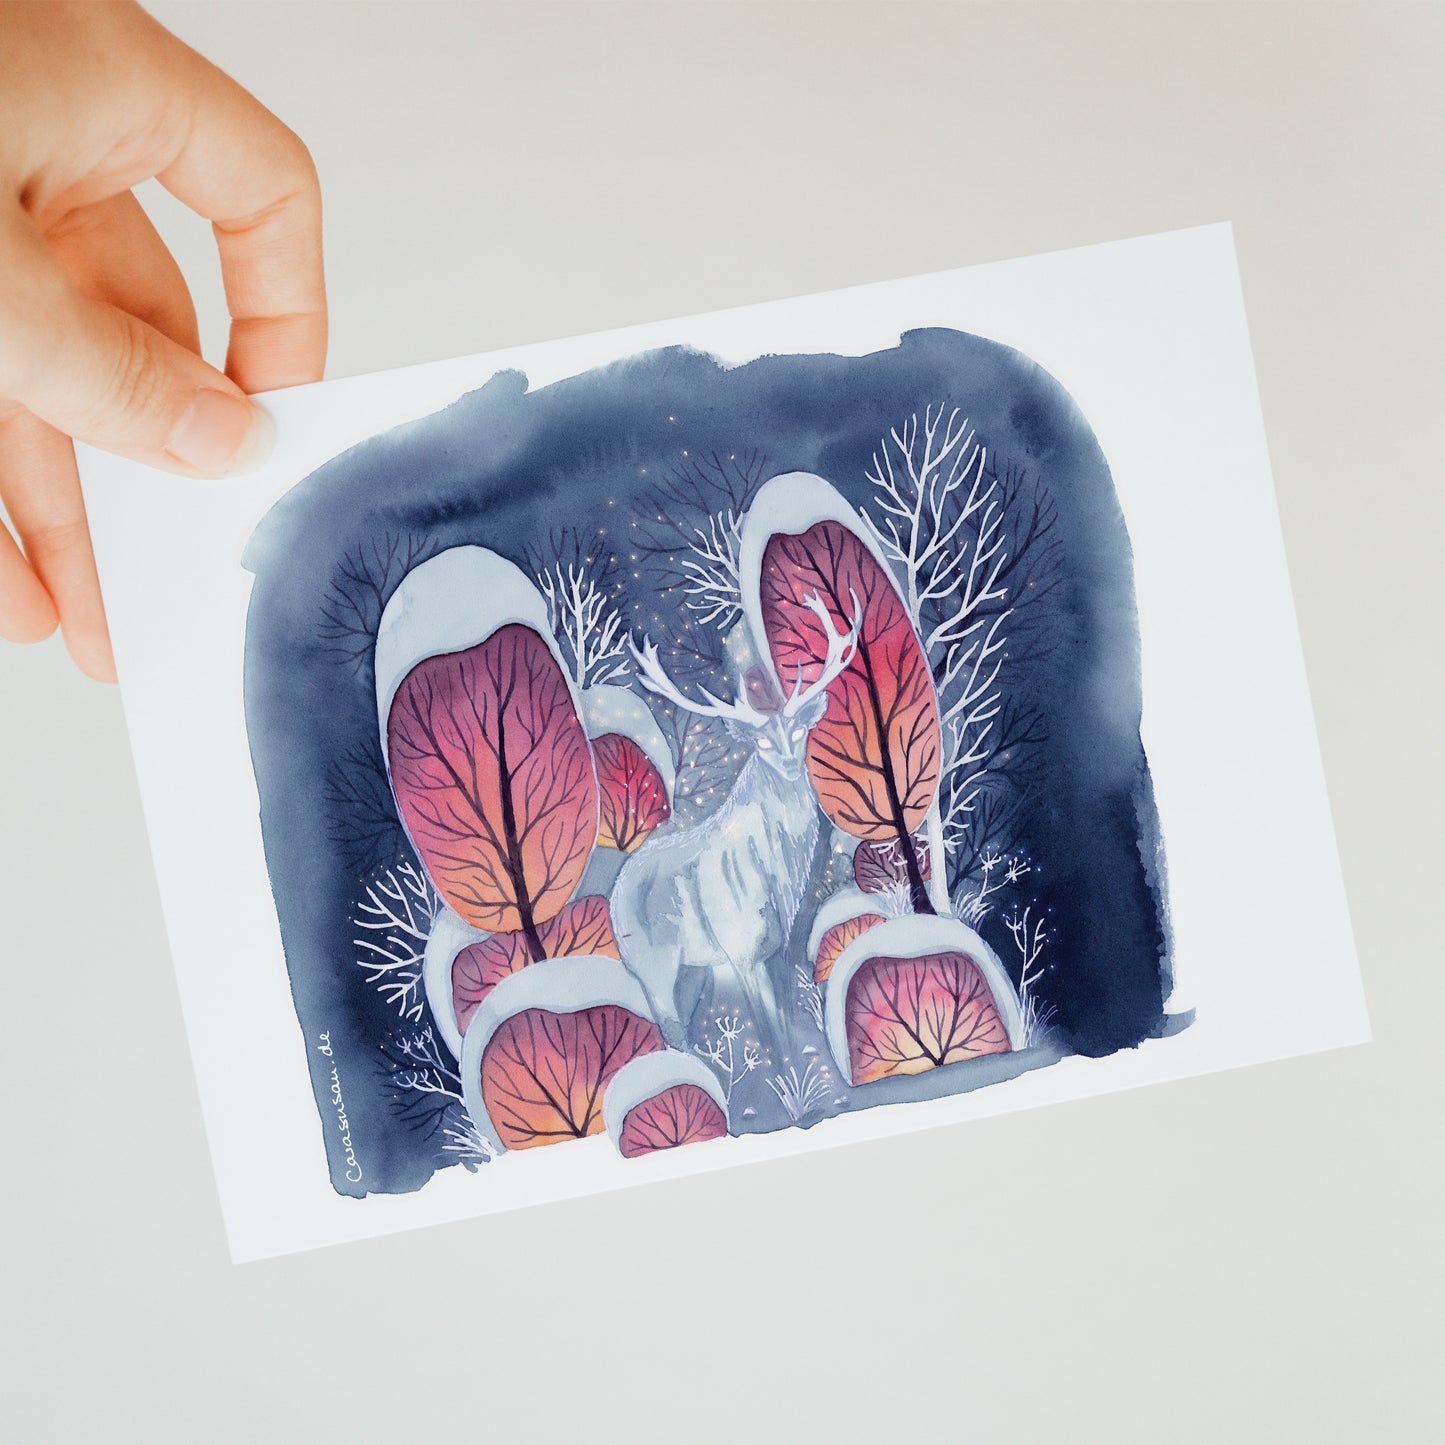 Winter postcard 'Deer in snowy forest' watercolour